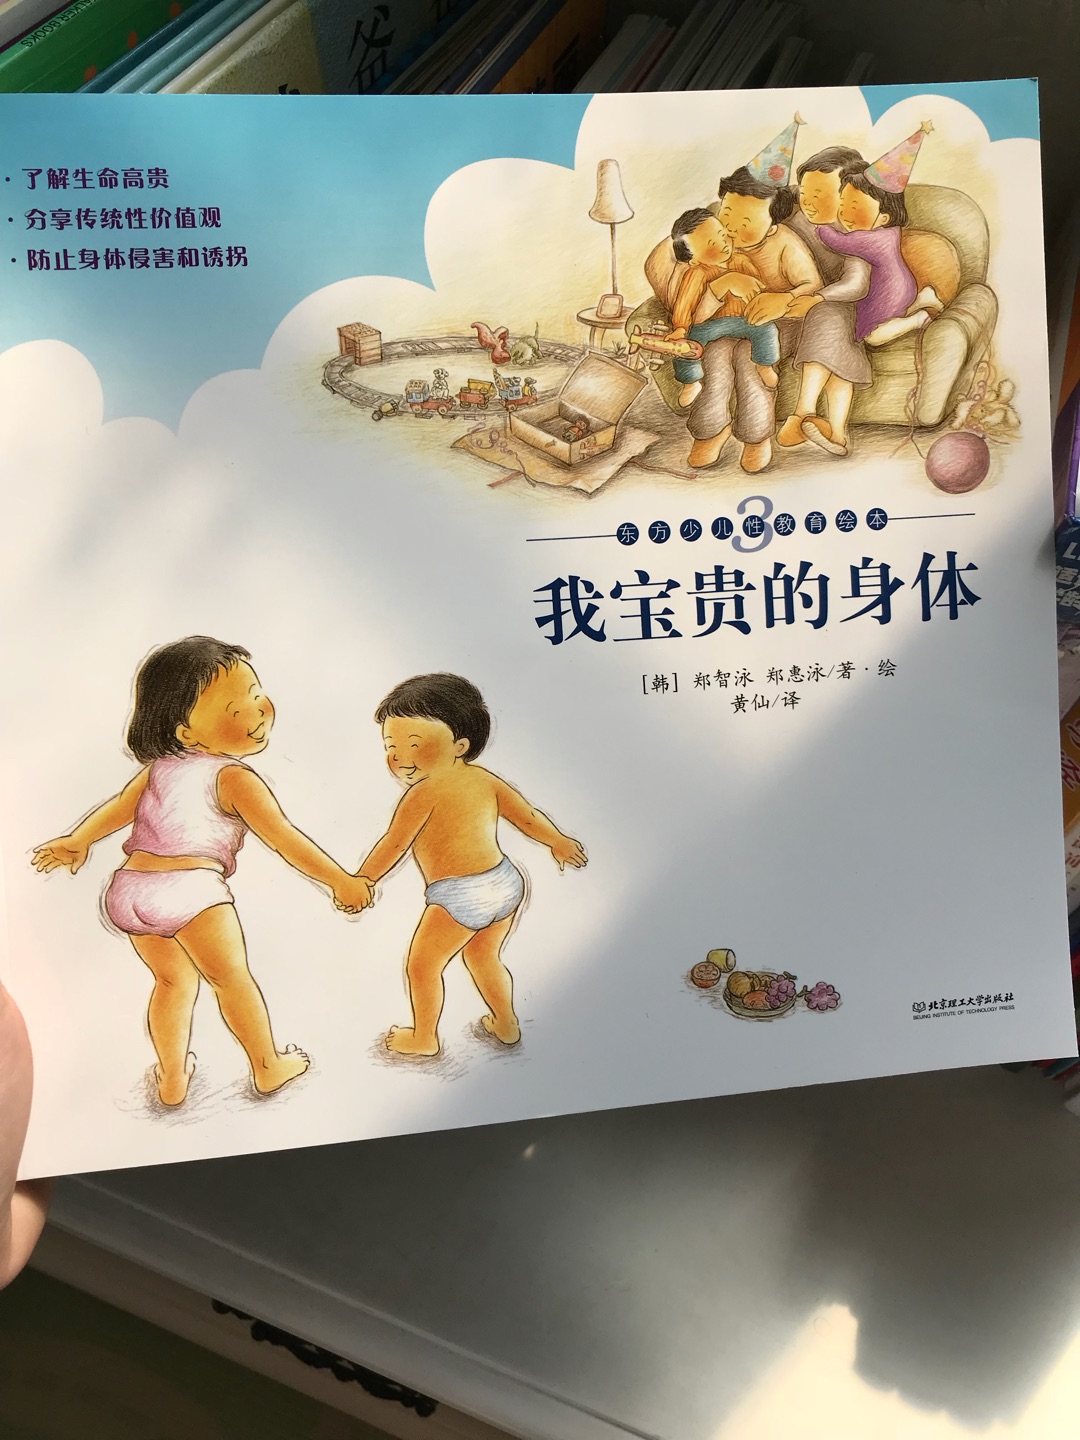 东方少儿性教育这套书很值得买哦，对宝宝的性教育还是很有必要的，从小引导教育